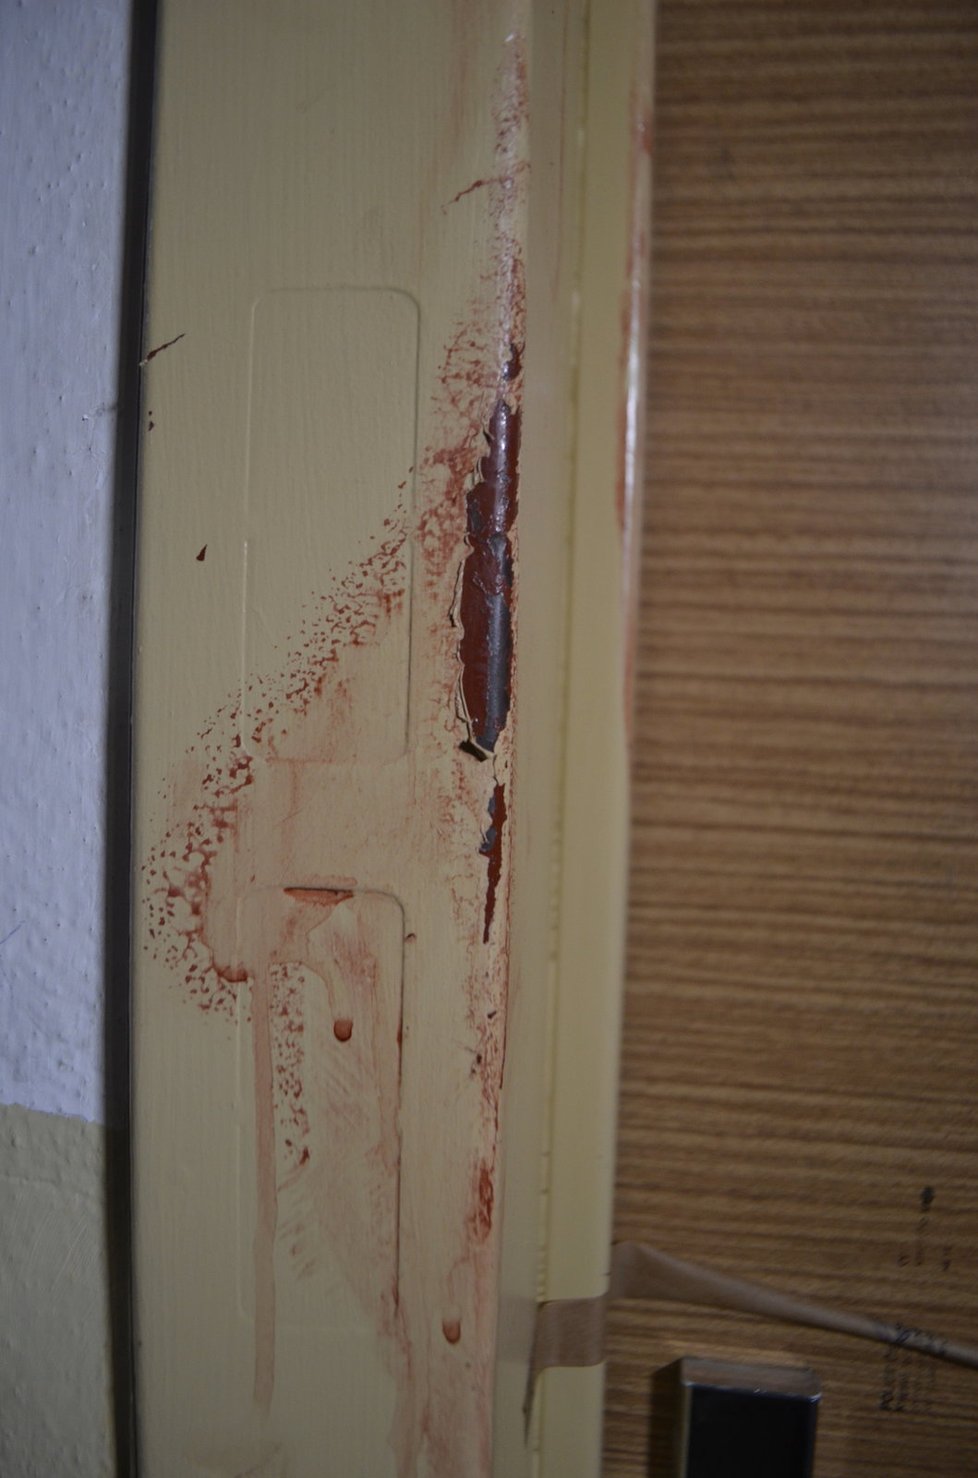 Za těmito dveřmi Daniela svého přítele bodla. Na rámu byla ještě včera zaschlá krev.